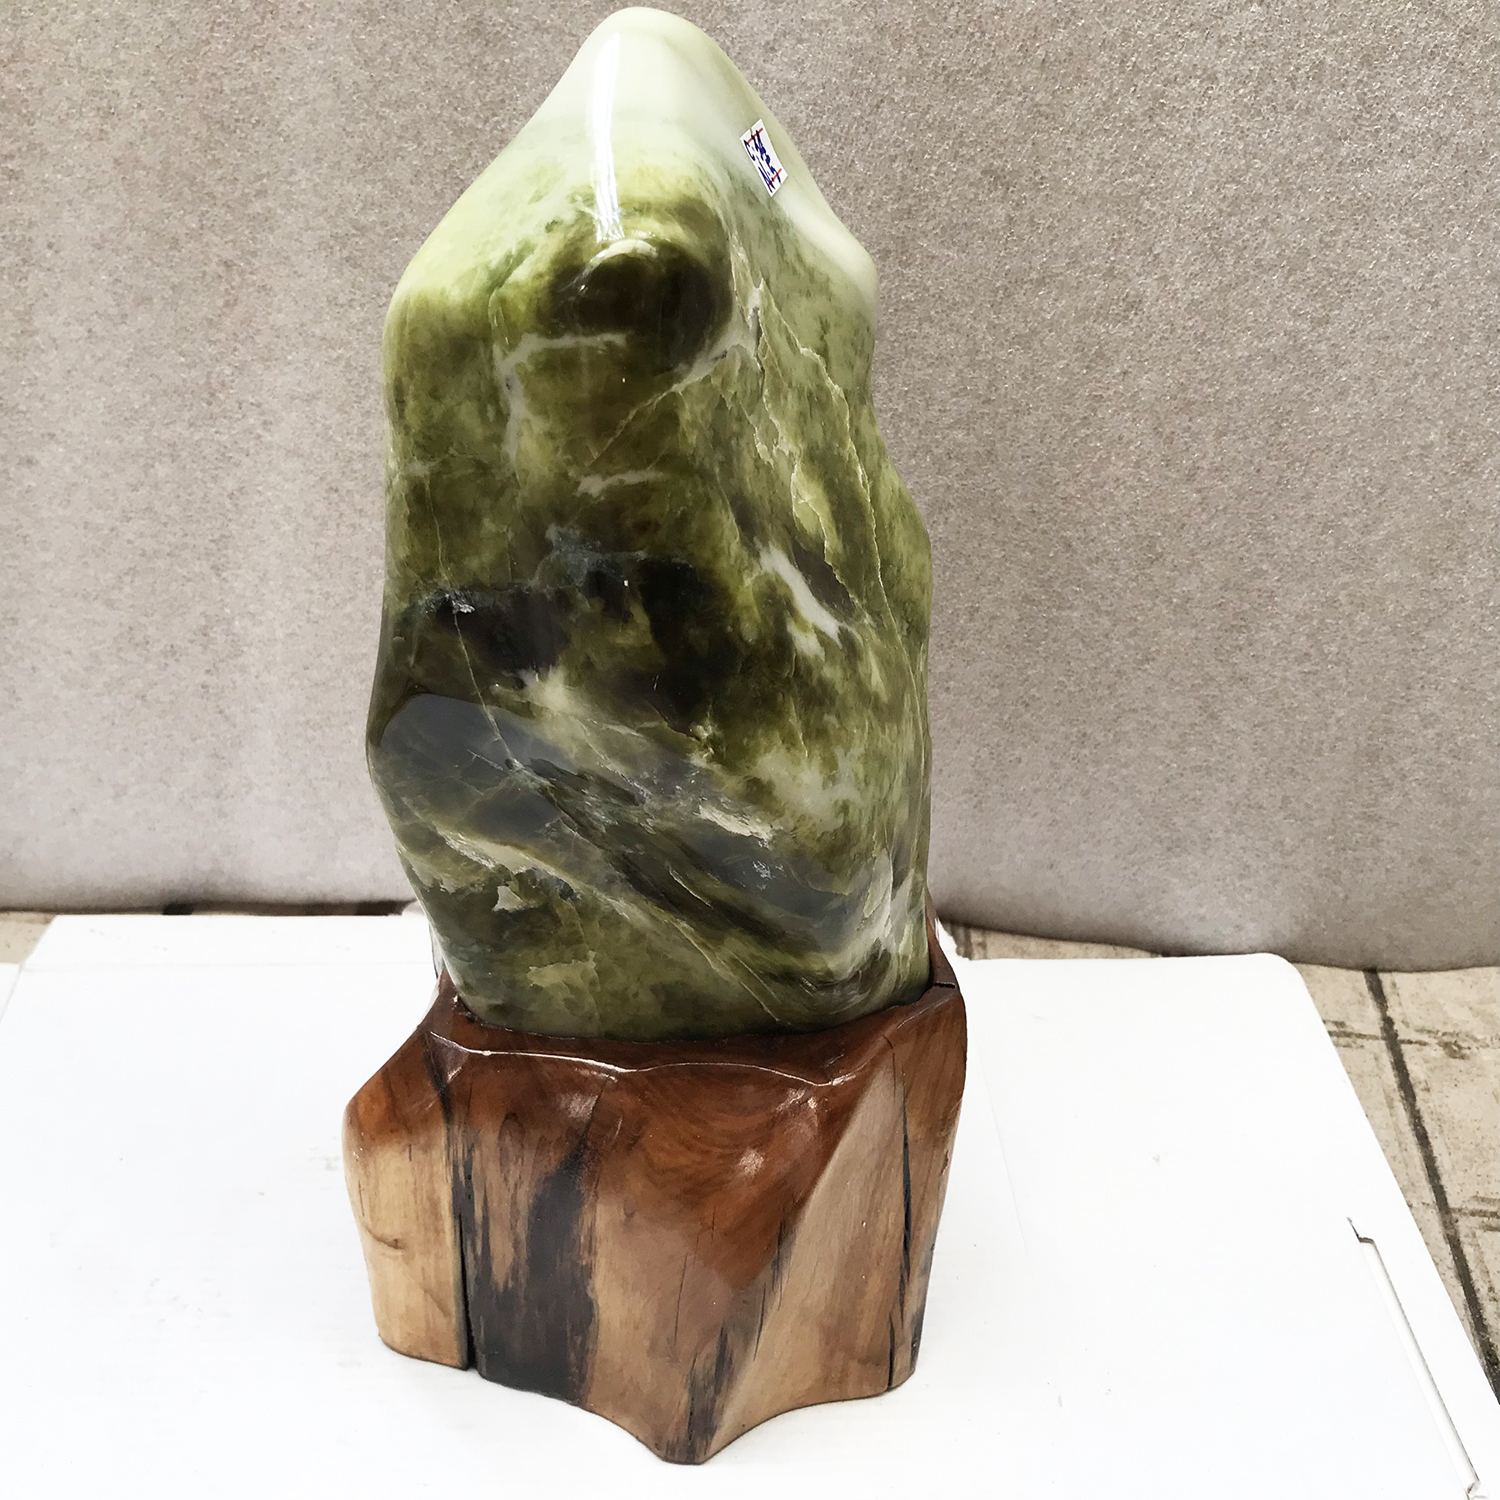 Cây đá phong thủy tự nhiên để bàn ngọc xanh serpentine cho người mệnh Hỏa và mộc nặng 5kg nhiều ngọc